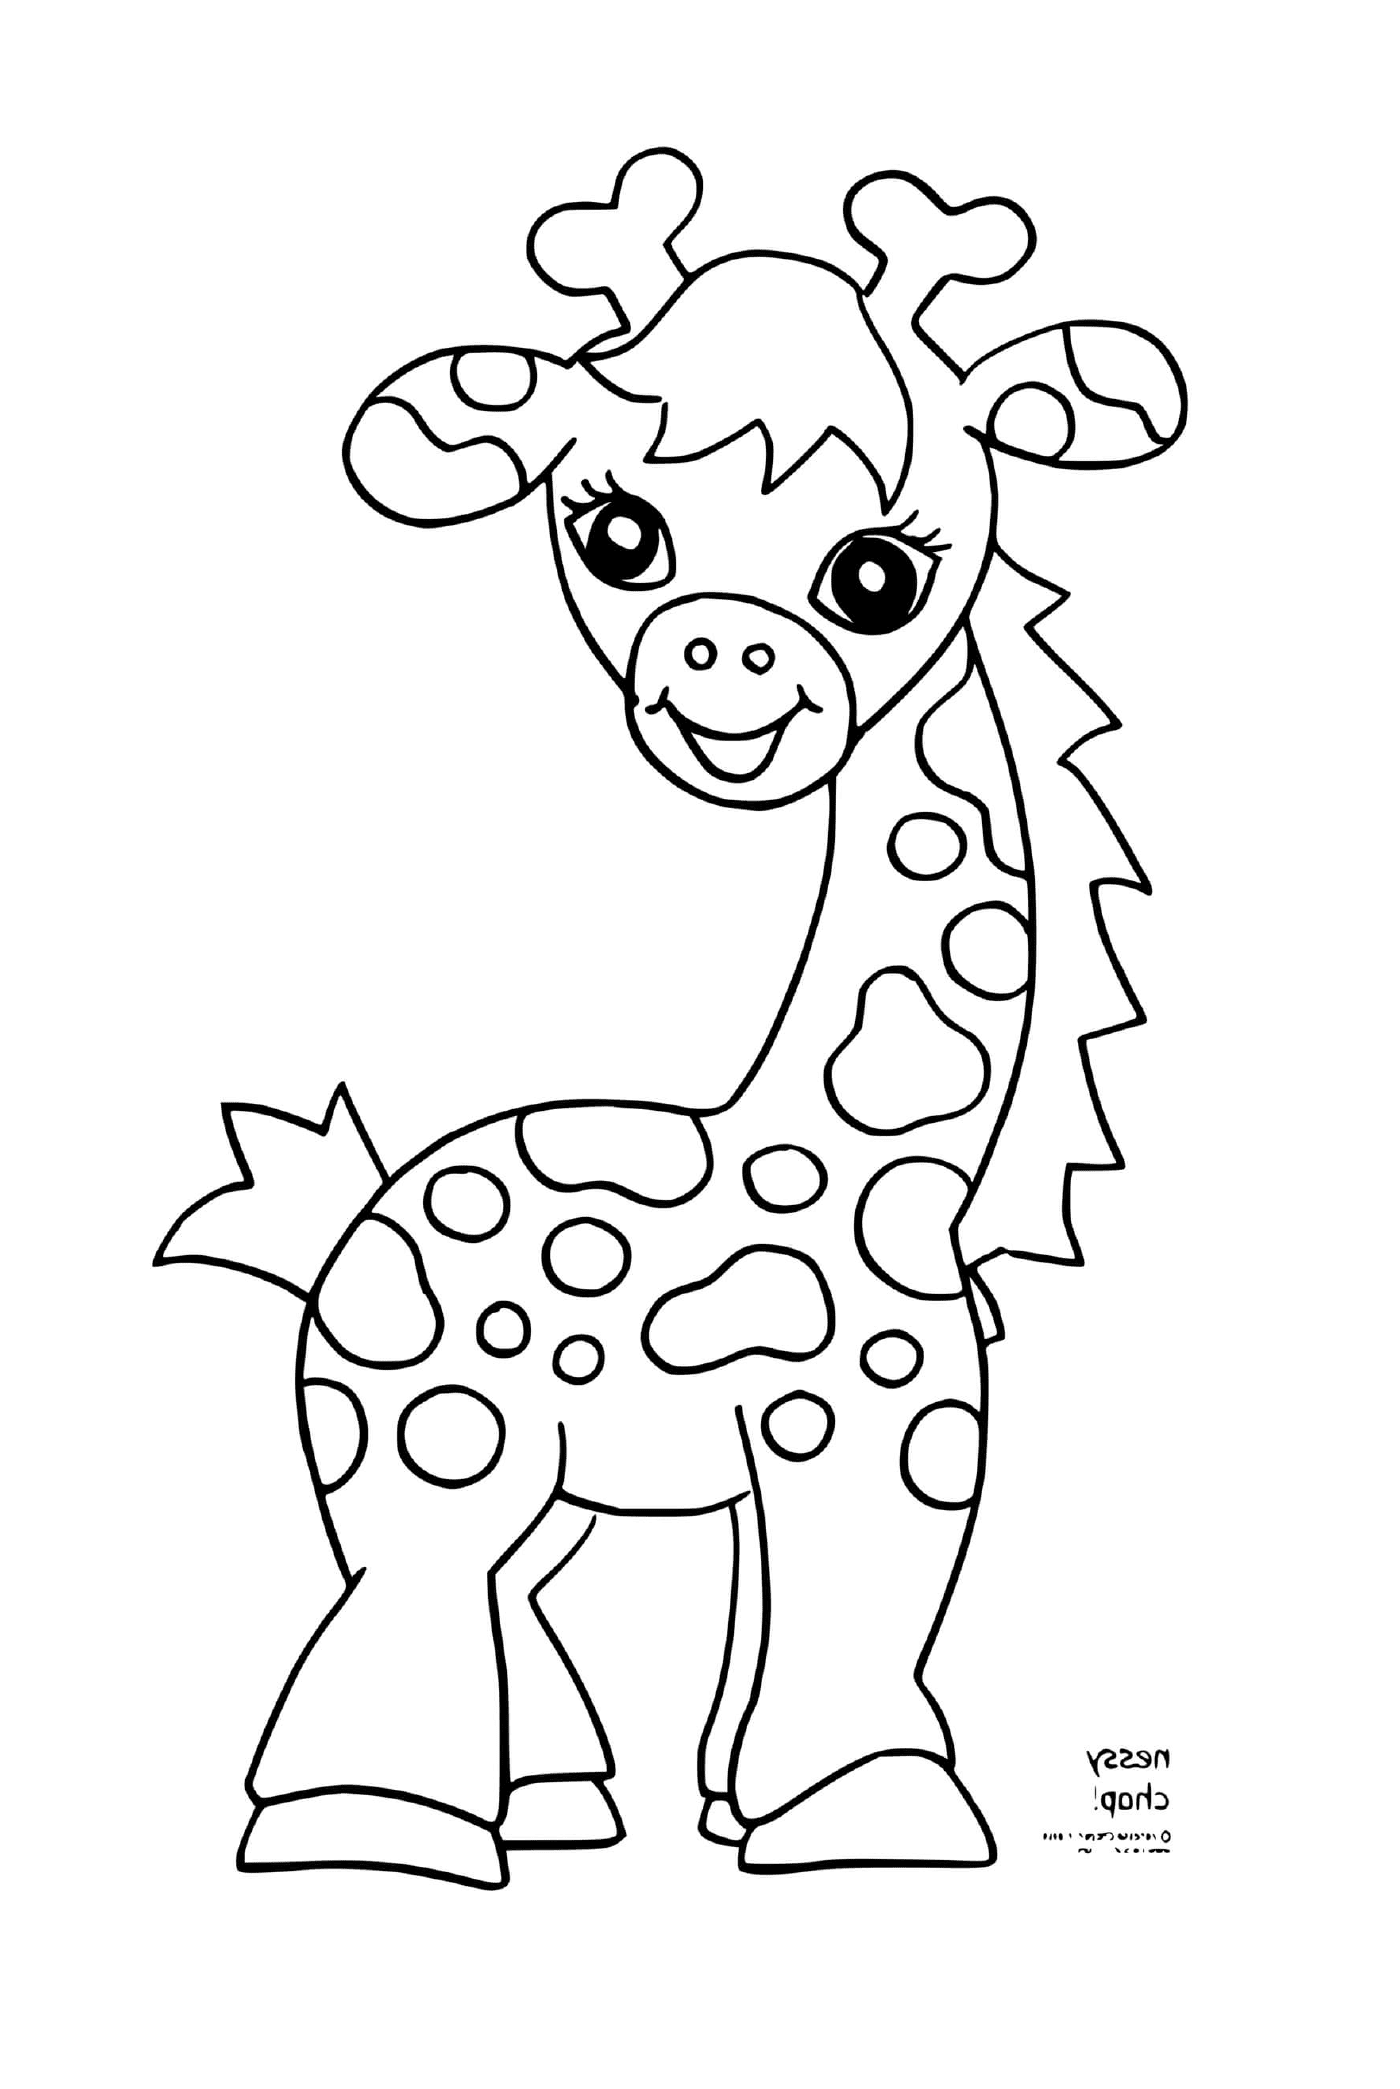  Жираф улыбается с красивыми глазами 